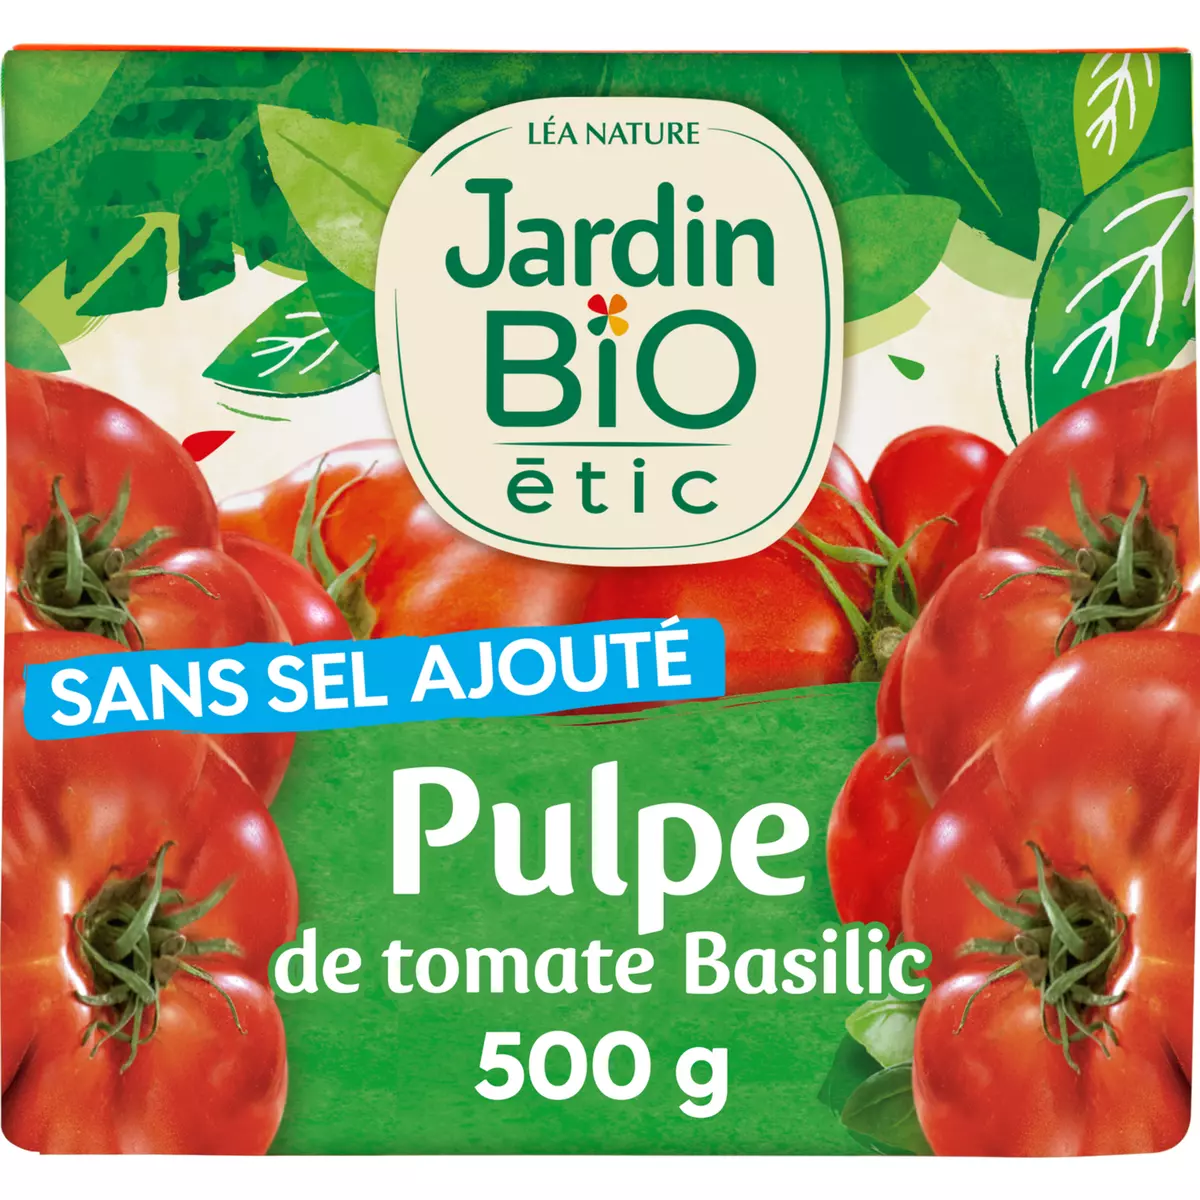 JARDIN BIO ETIC Pulpe de tomates au basilic sans sel ajouté, en brique 500g